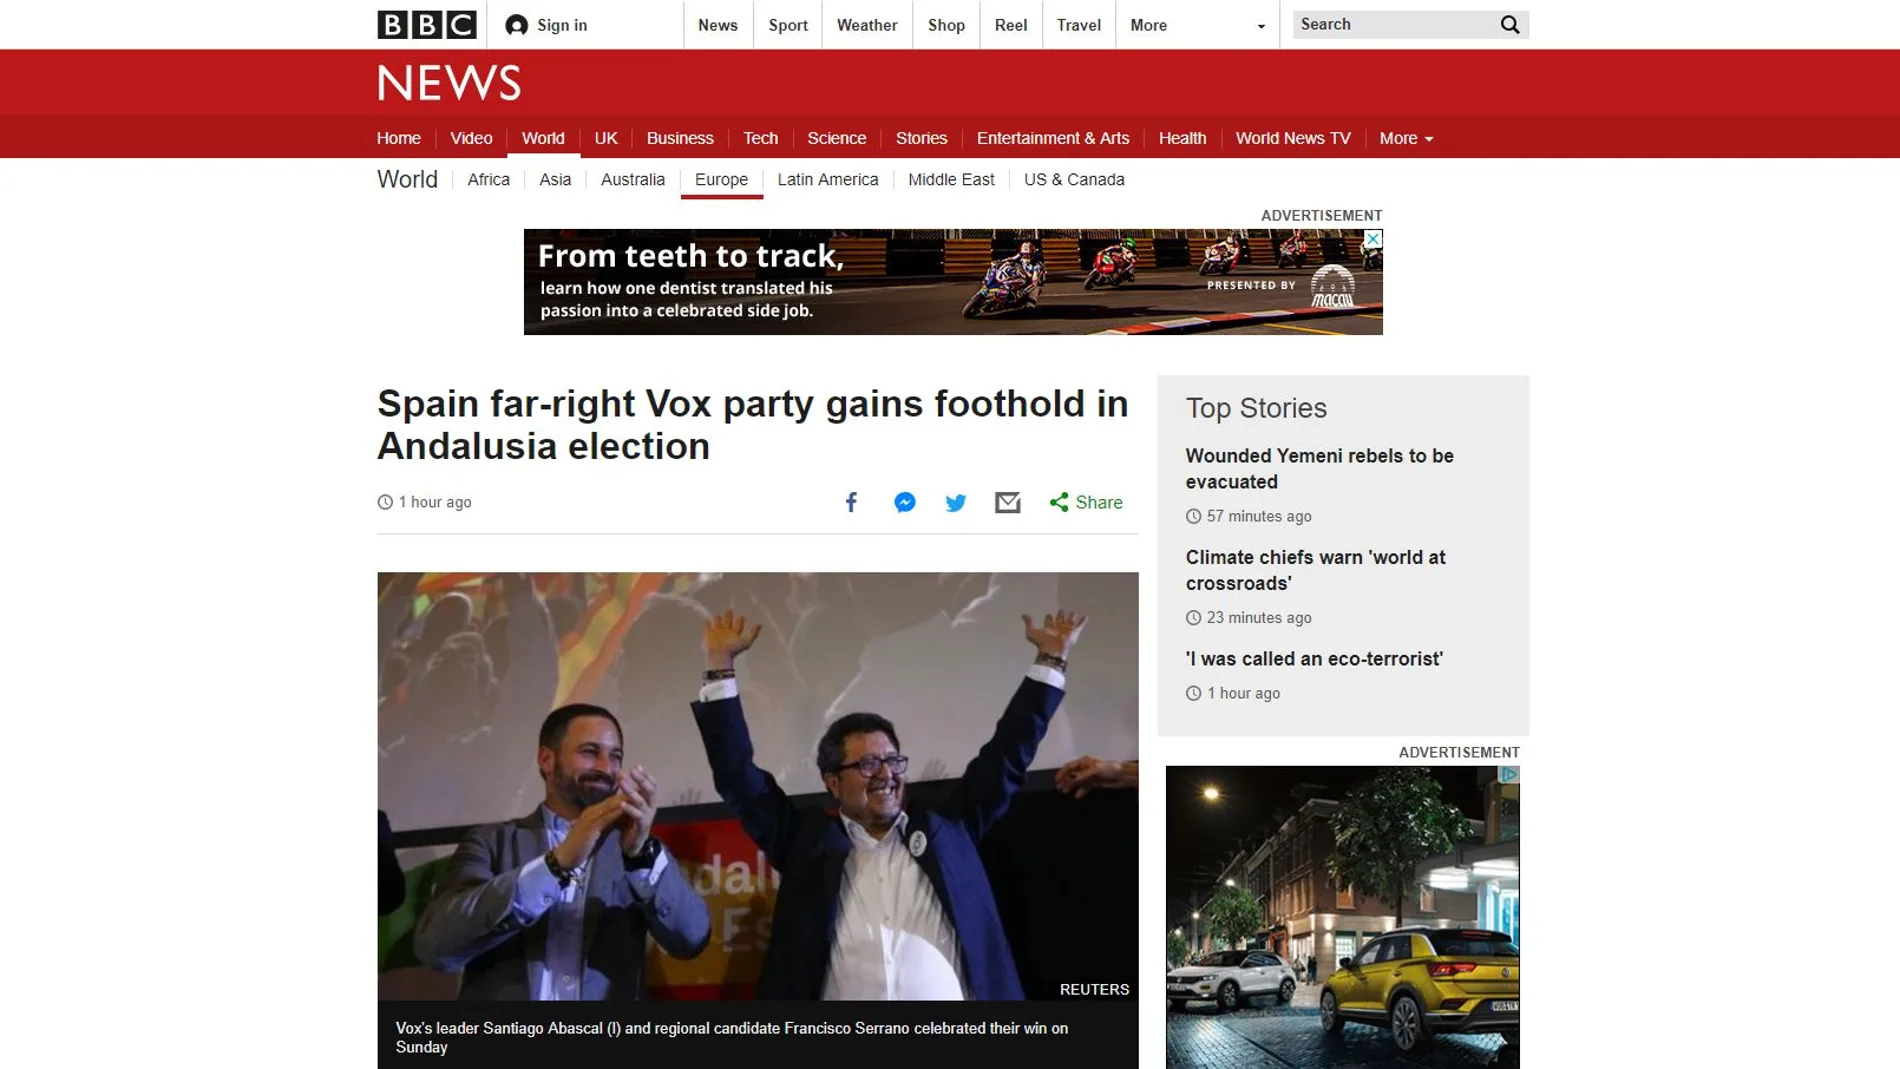 Captura de la noticia de BBC sobre las elecciones de Andalucía